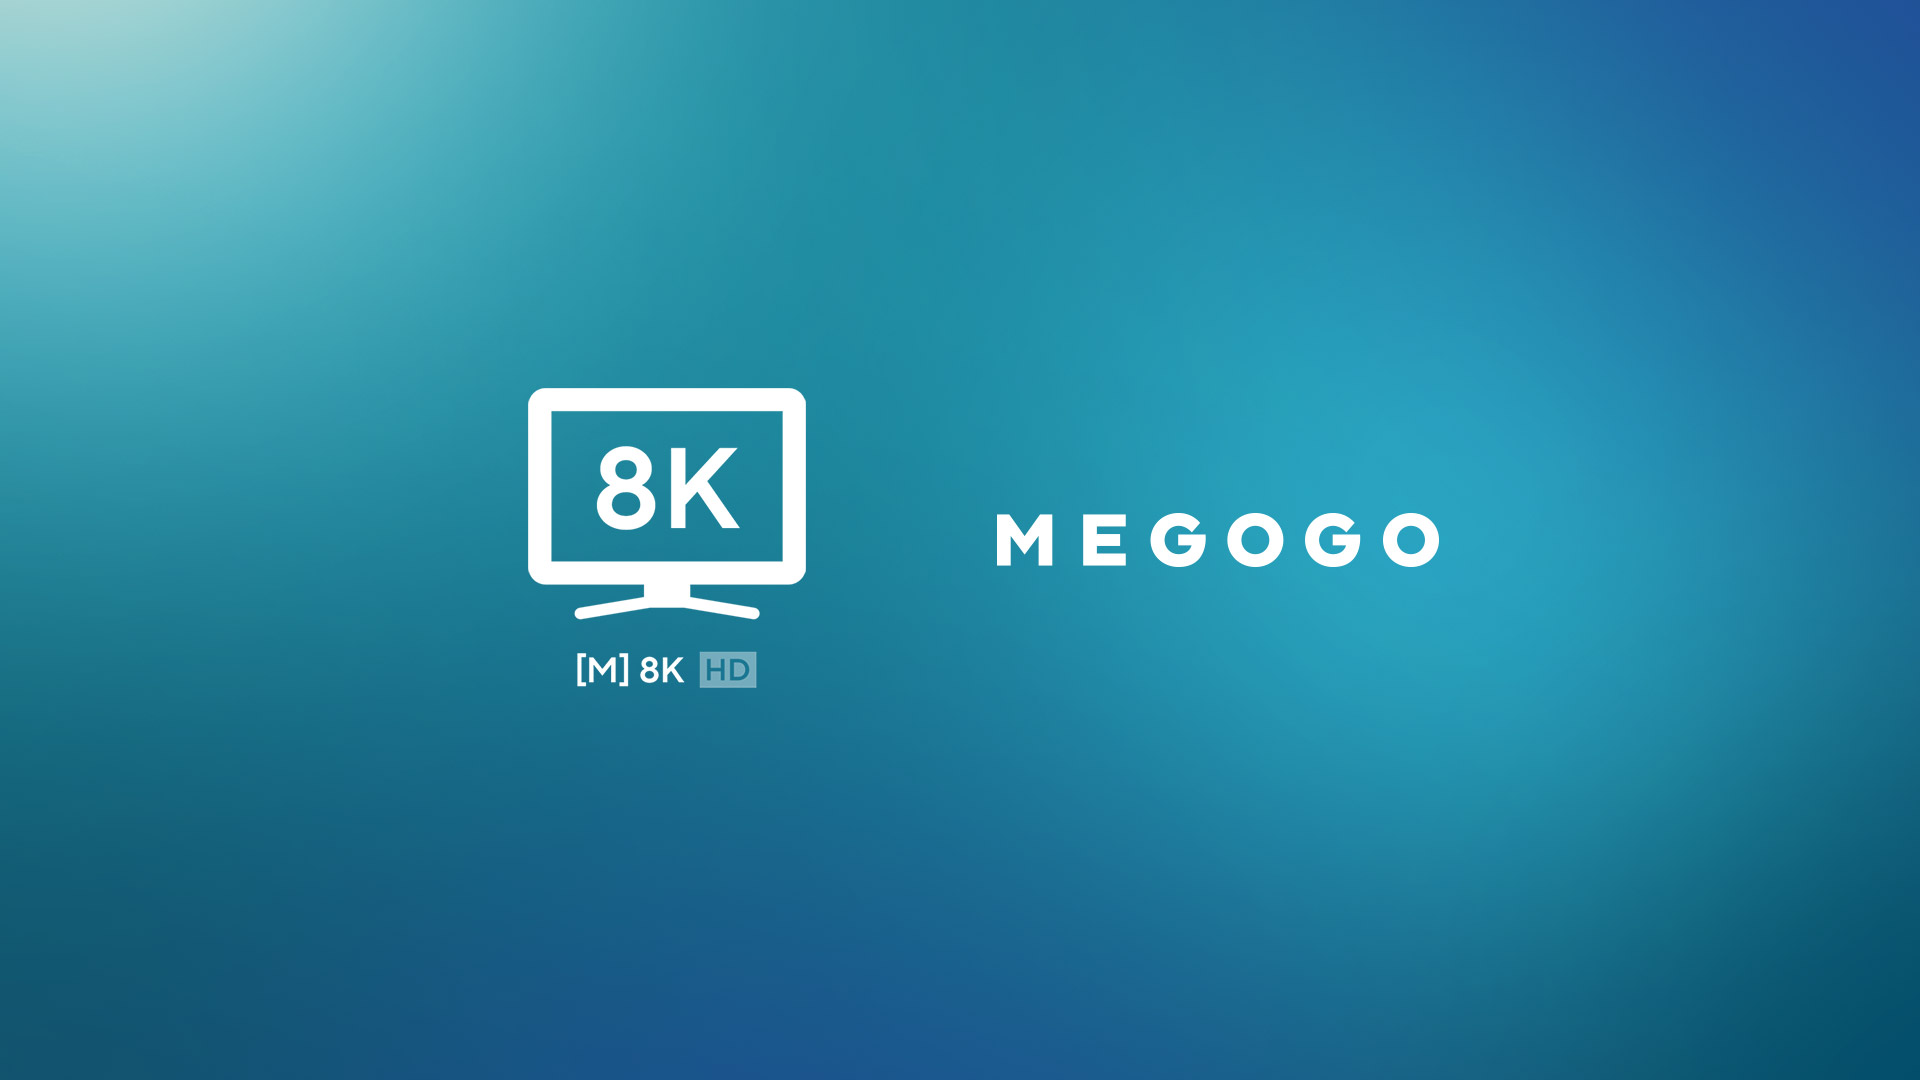 MEGOGO lanza el primer canal en Ucrania para transmitir con resolución 8K